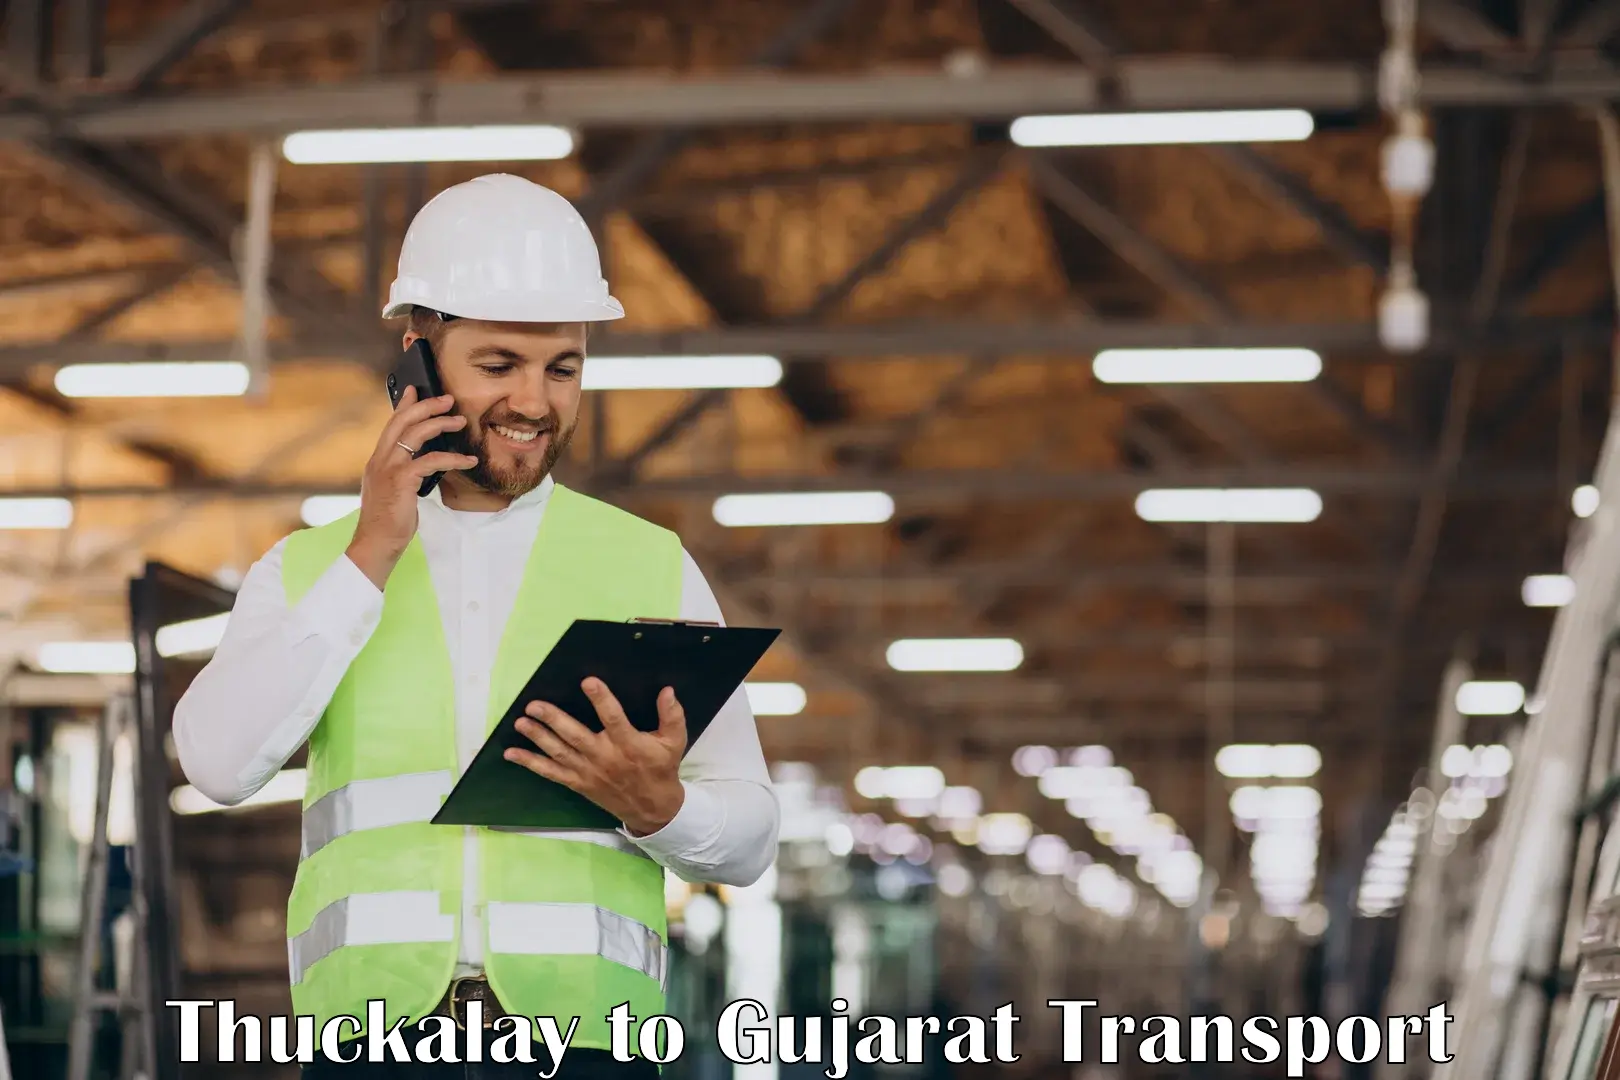 Nearest transport service Thuckalay to Jhagadia